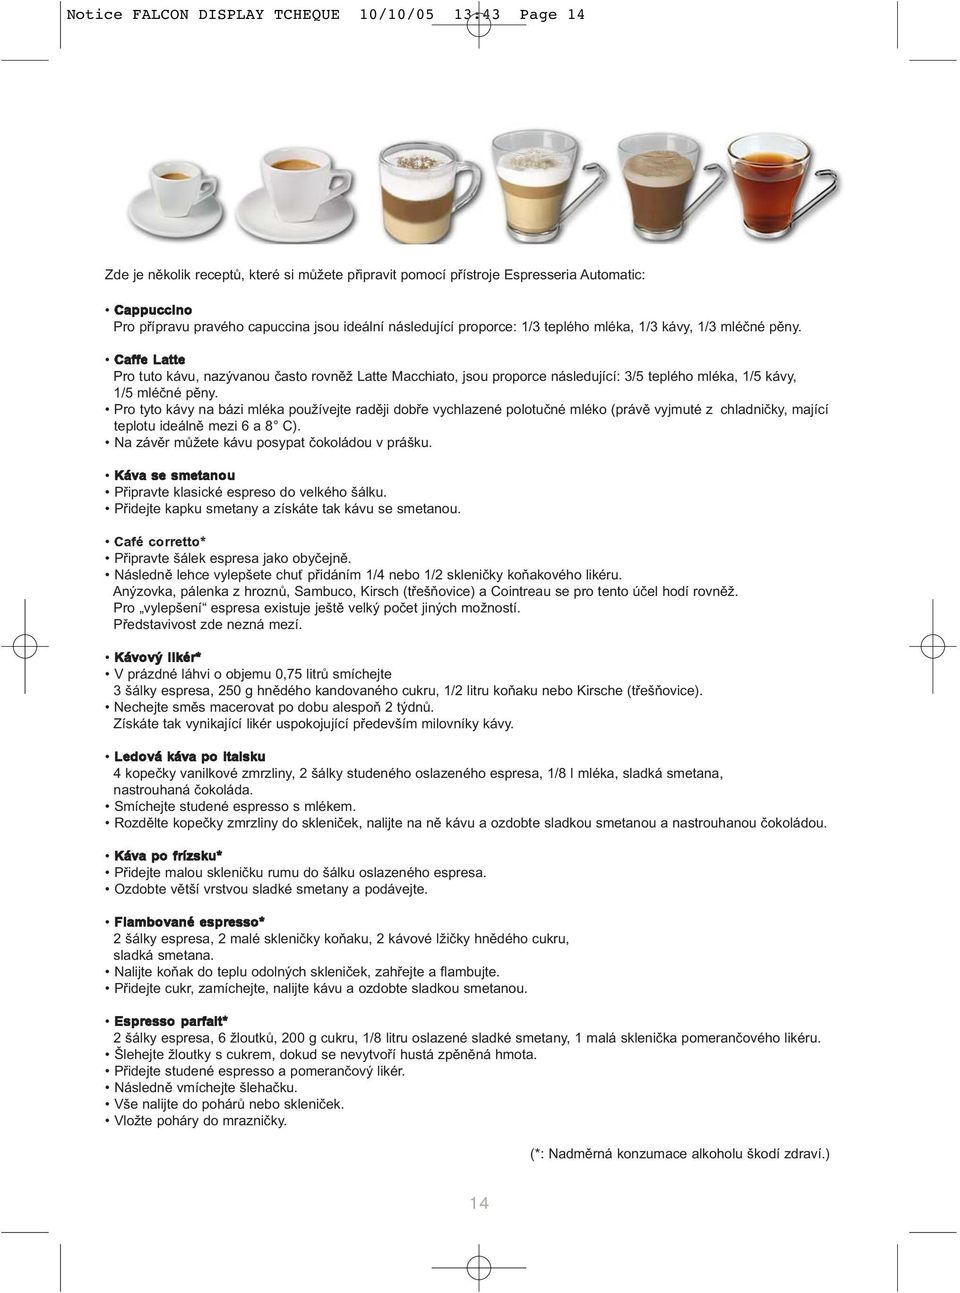 Caffe Latte Pro tuto kávu, nazývanou často rovněž Latte Macchiato, jsou proporce následující: 3/5 teplého mléka, 1/5 kávy, 1/5 mléčné pěny.